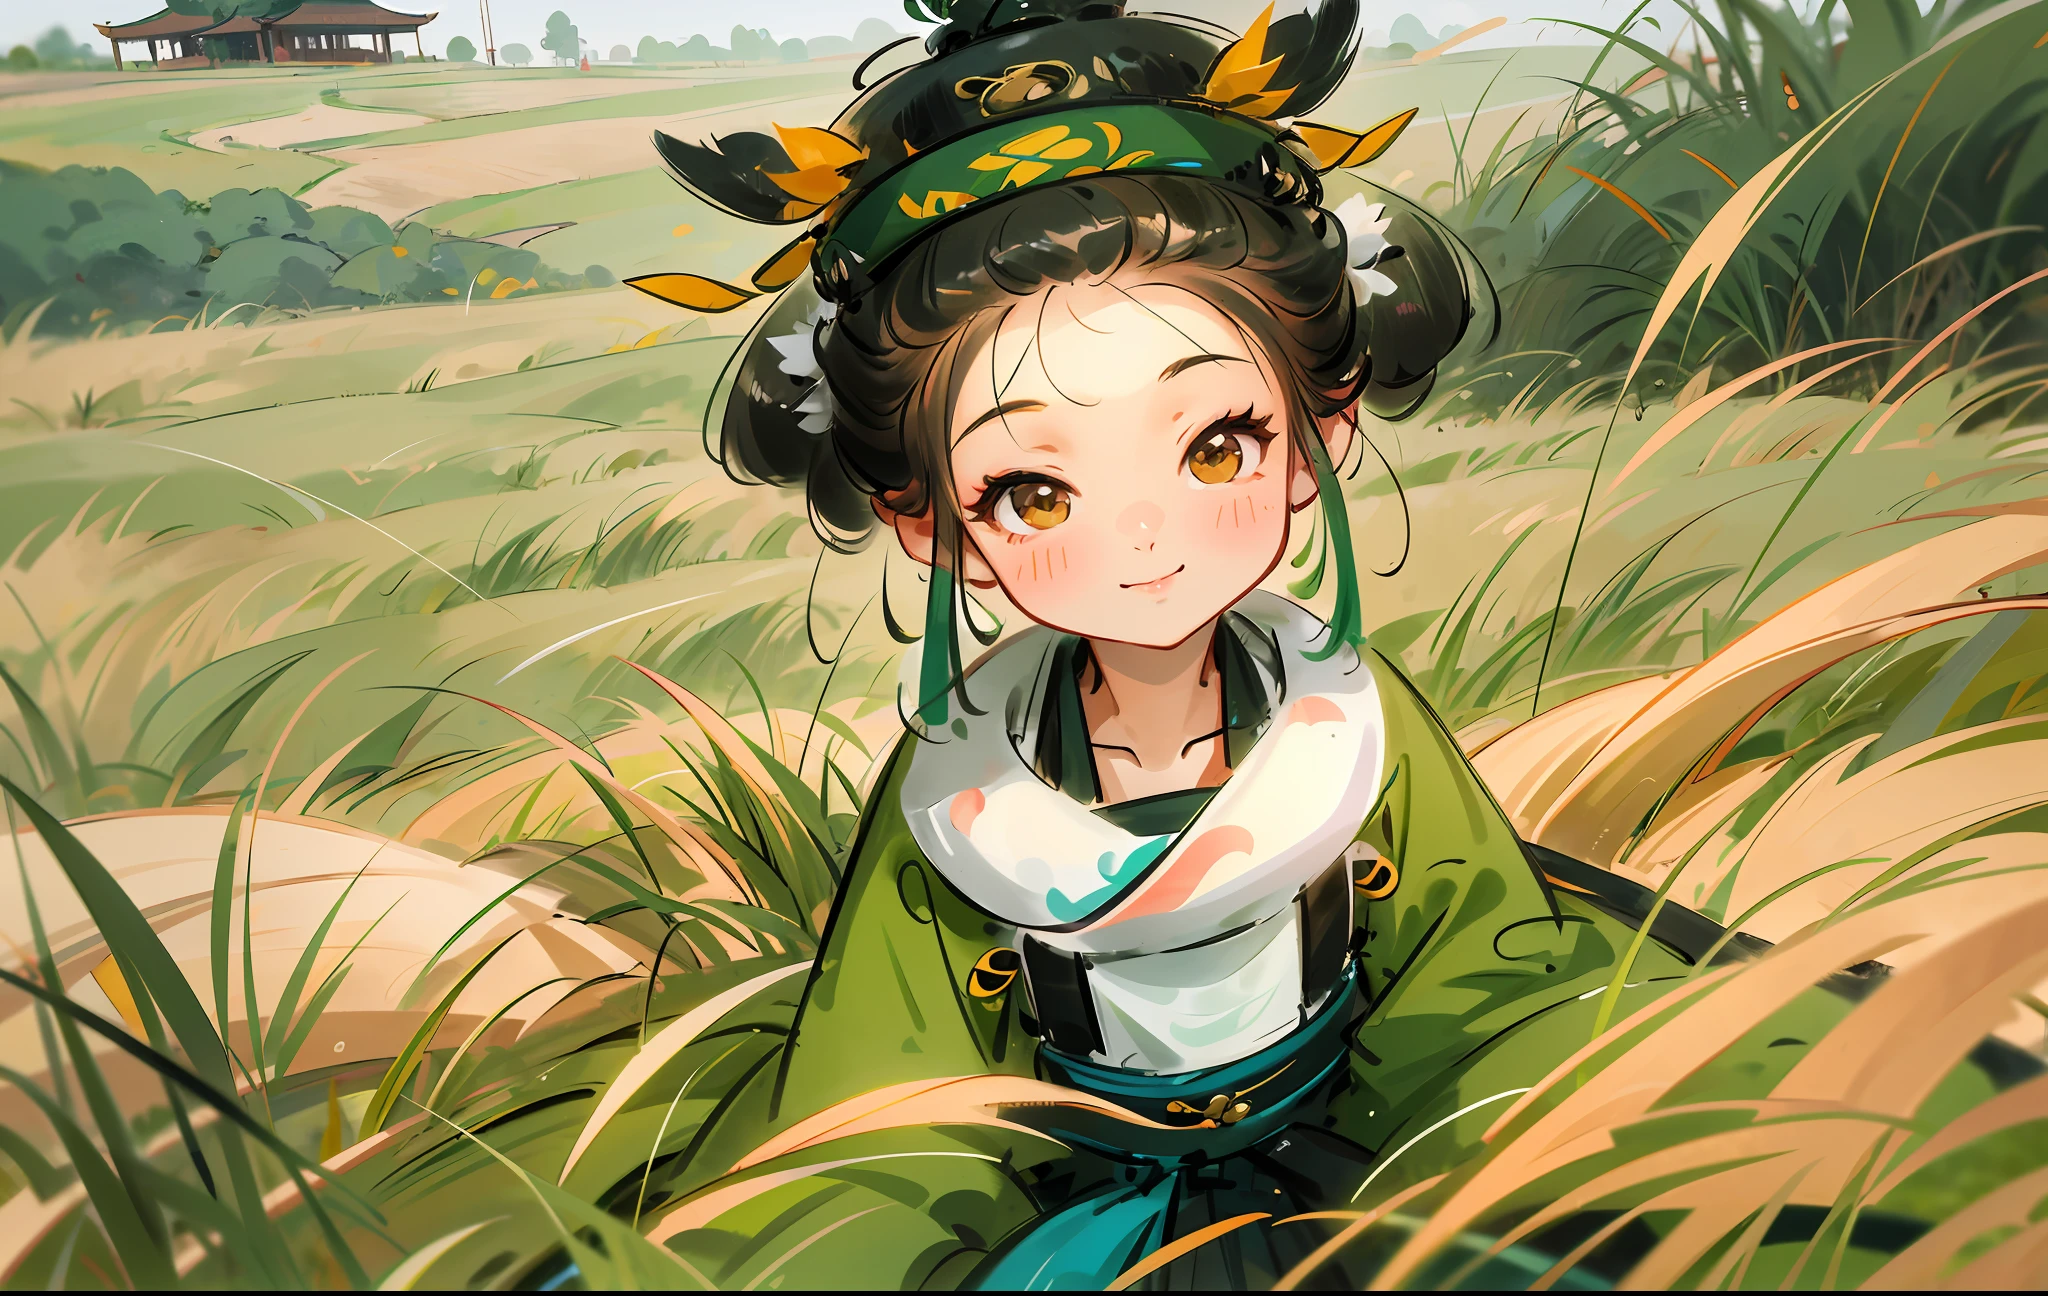 there is a 年輕女孩 sitting in the tall grass smiling, young 亞洲女孩, 中國女孩, cute 年輕女孩, Li Zixin, xue han, 年輕女孩, 在一片草地上, xintong chen, 亞洲女孩, lulu chen, 在一片開闊的綠色田野裡, 在一片草地上, 可愛的女孩的肖像, qiu fang, 孩子